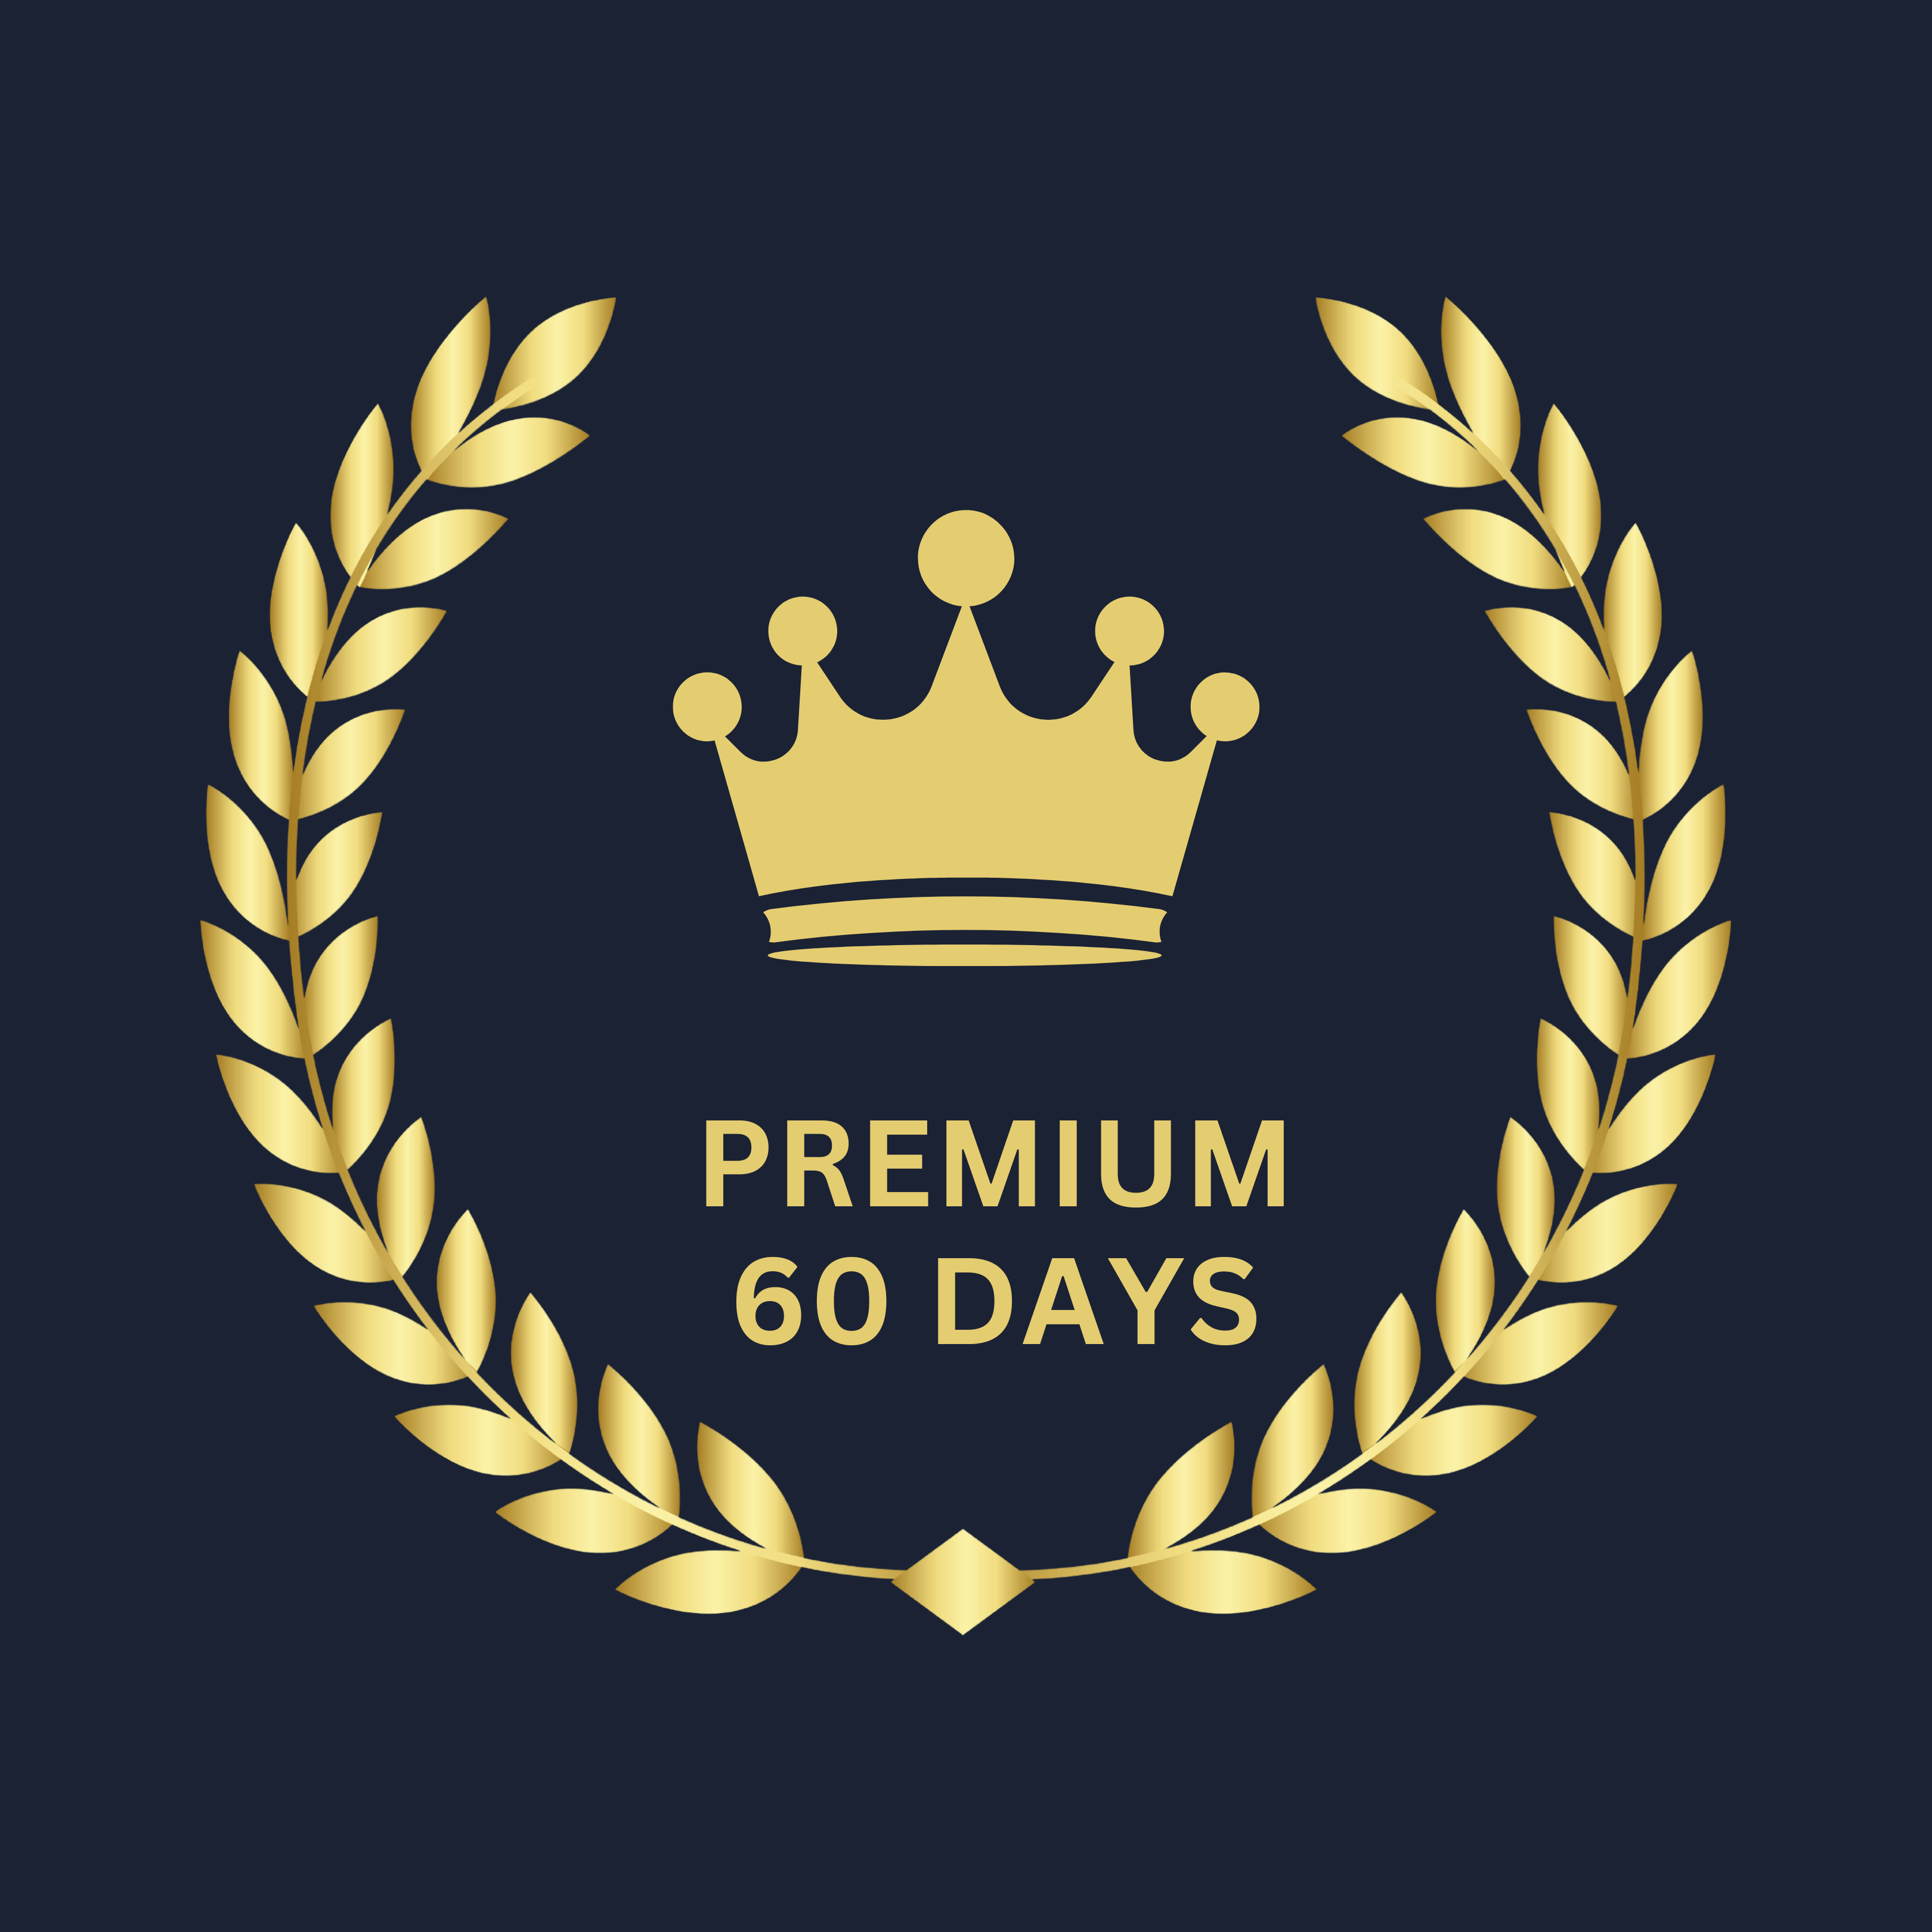 Premium 60 Days